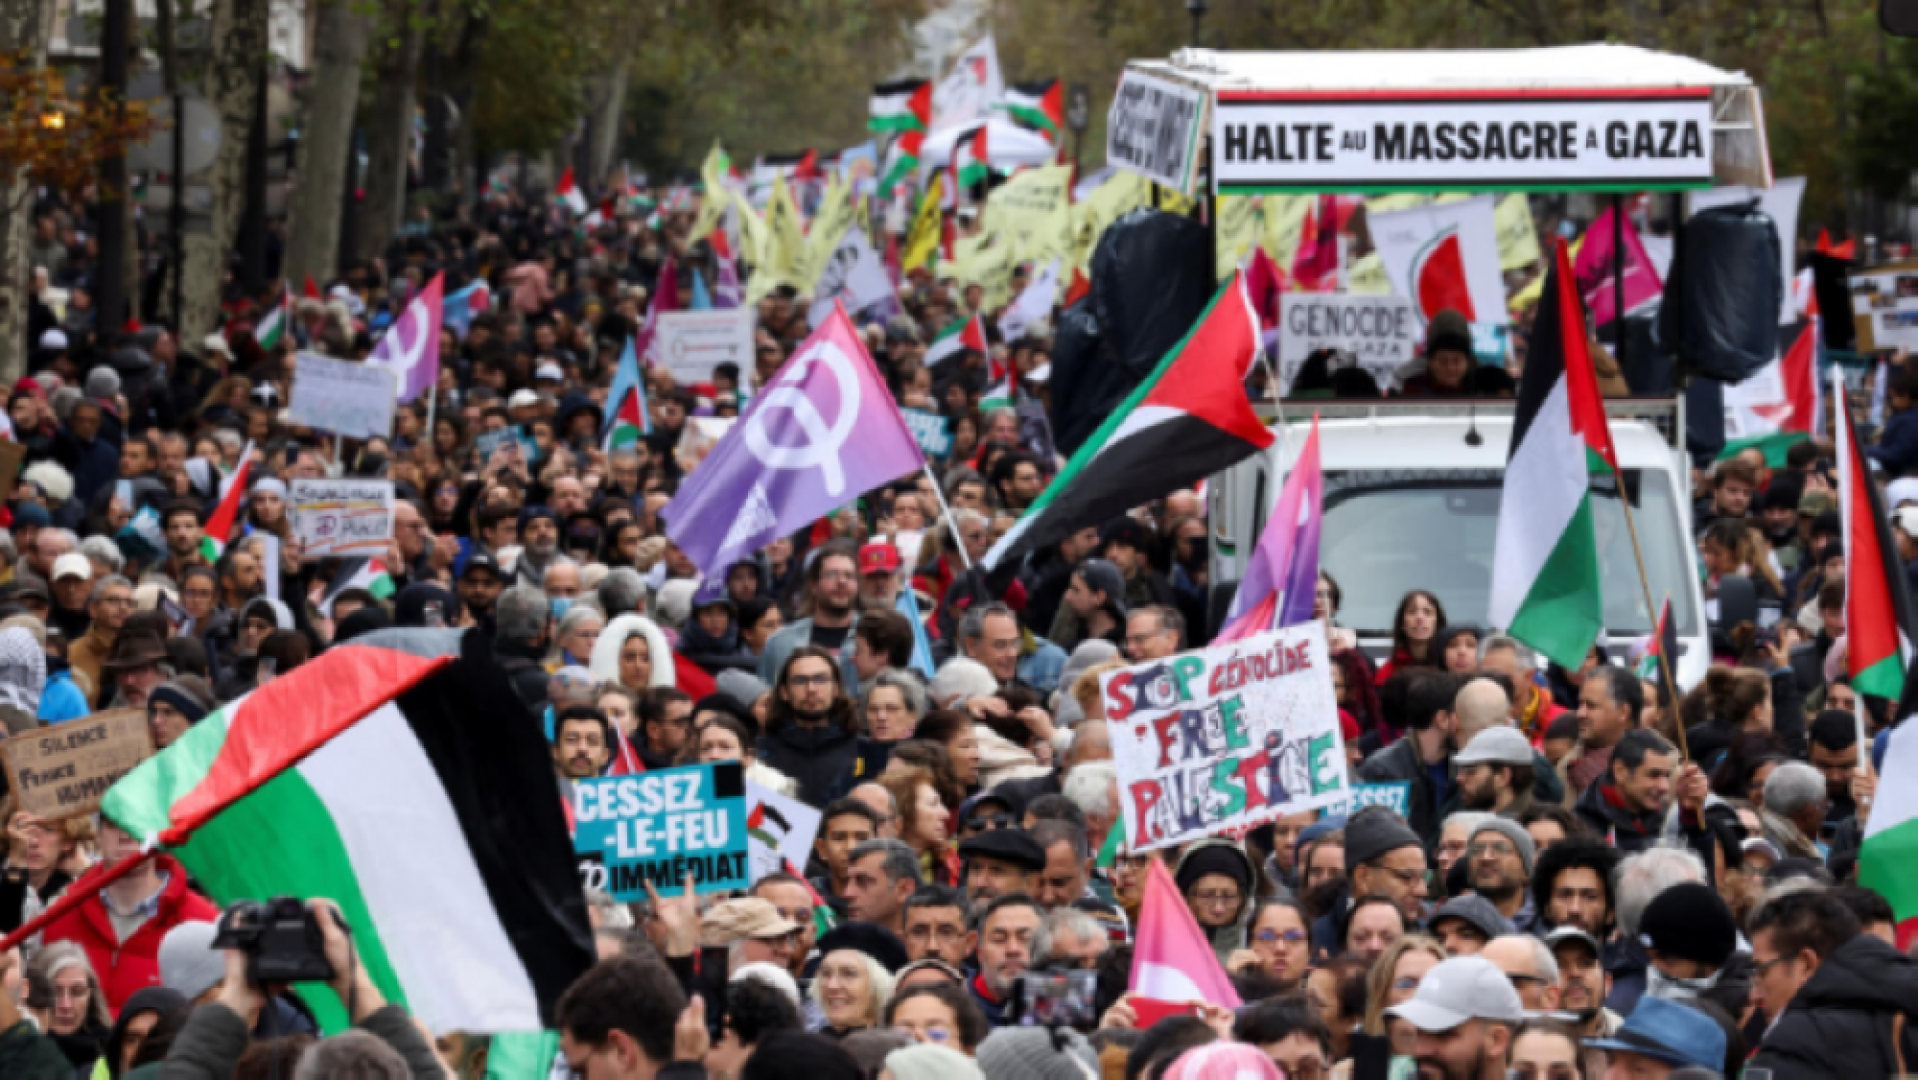 كتب الأستاذ حليم الشيخ: نظرة أولية إلى تظاهرات أوروبا الفلسطينية